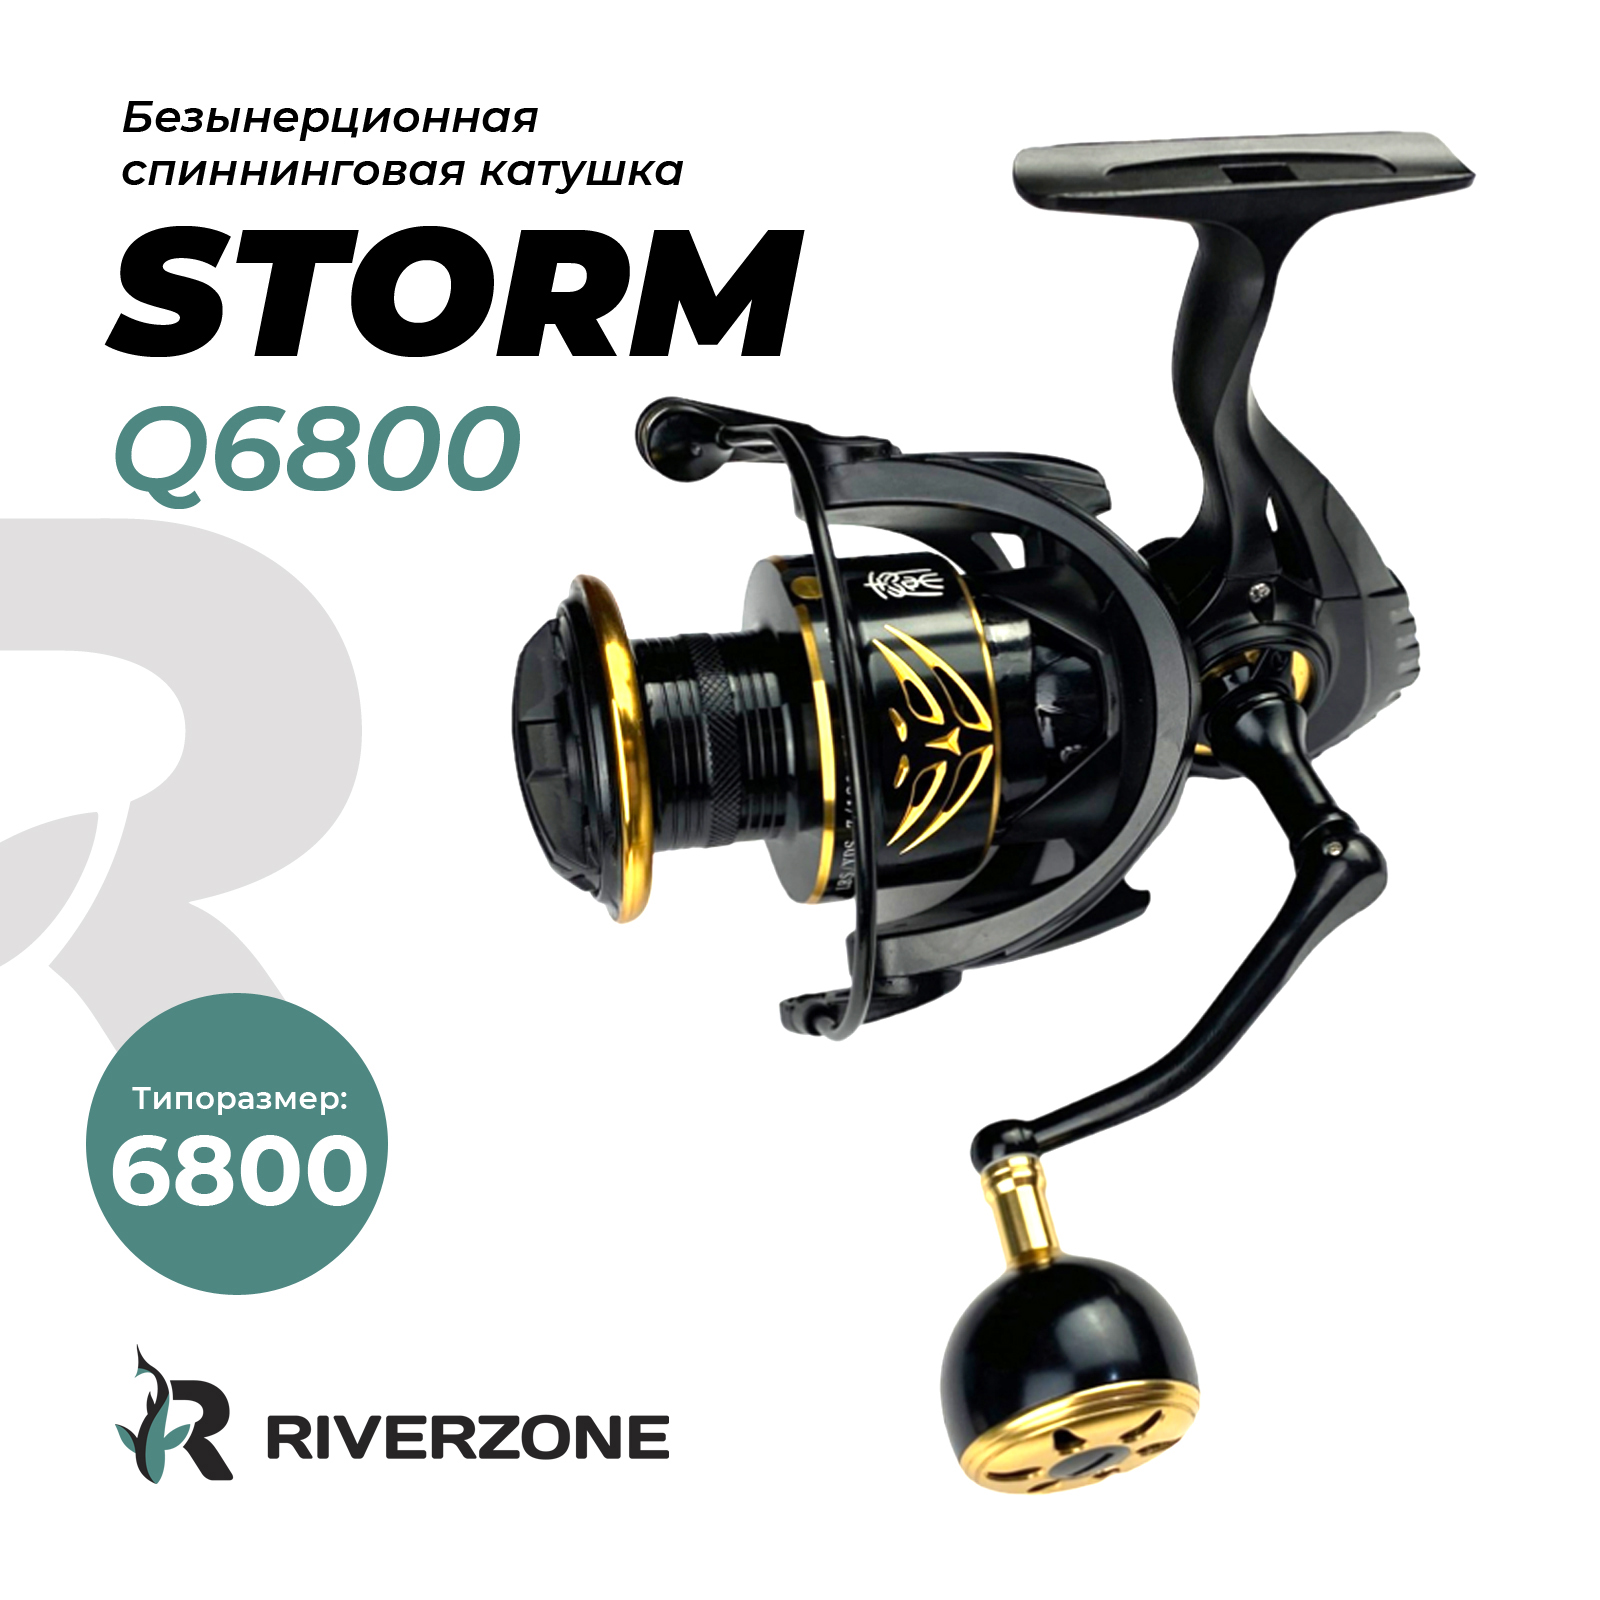 Катушка Riverzone Storm Q6800 - фото 1